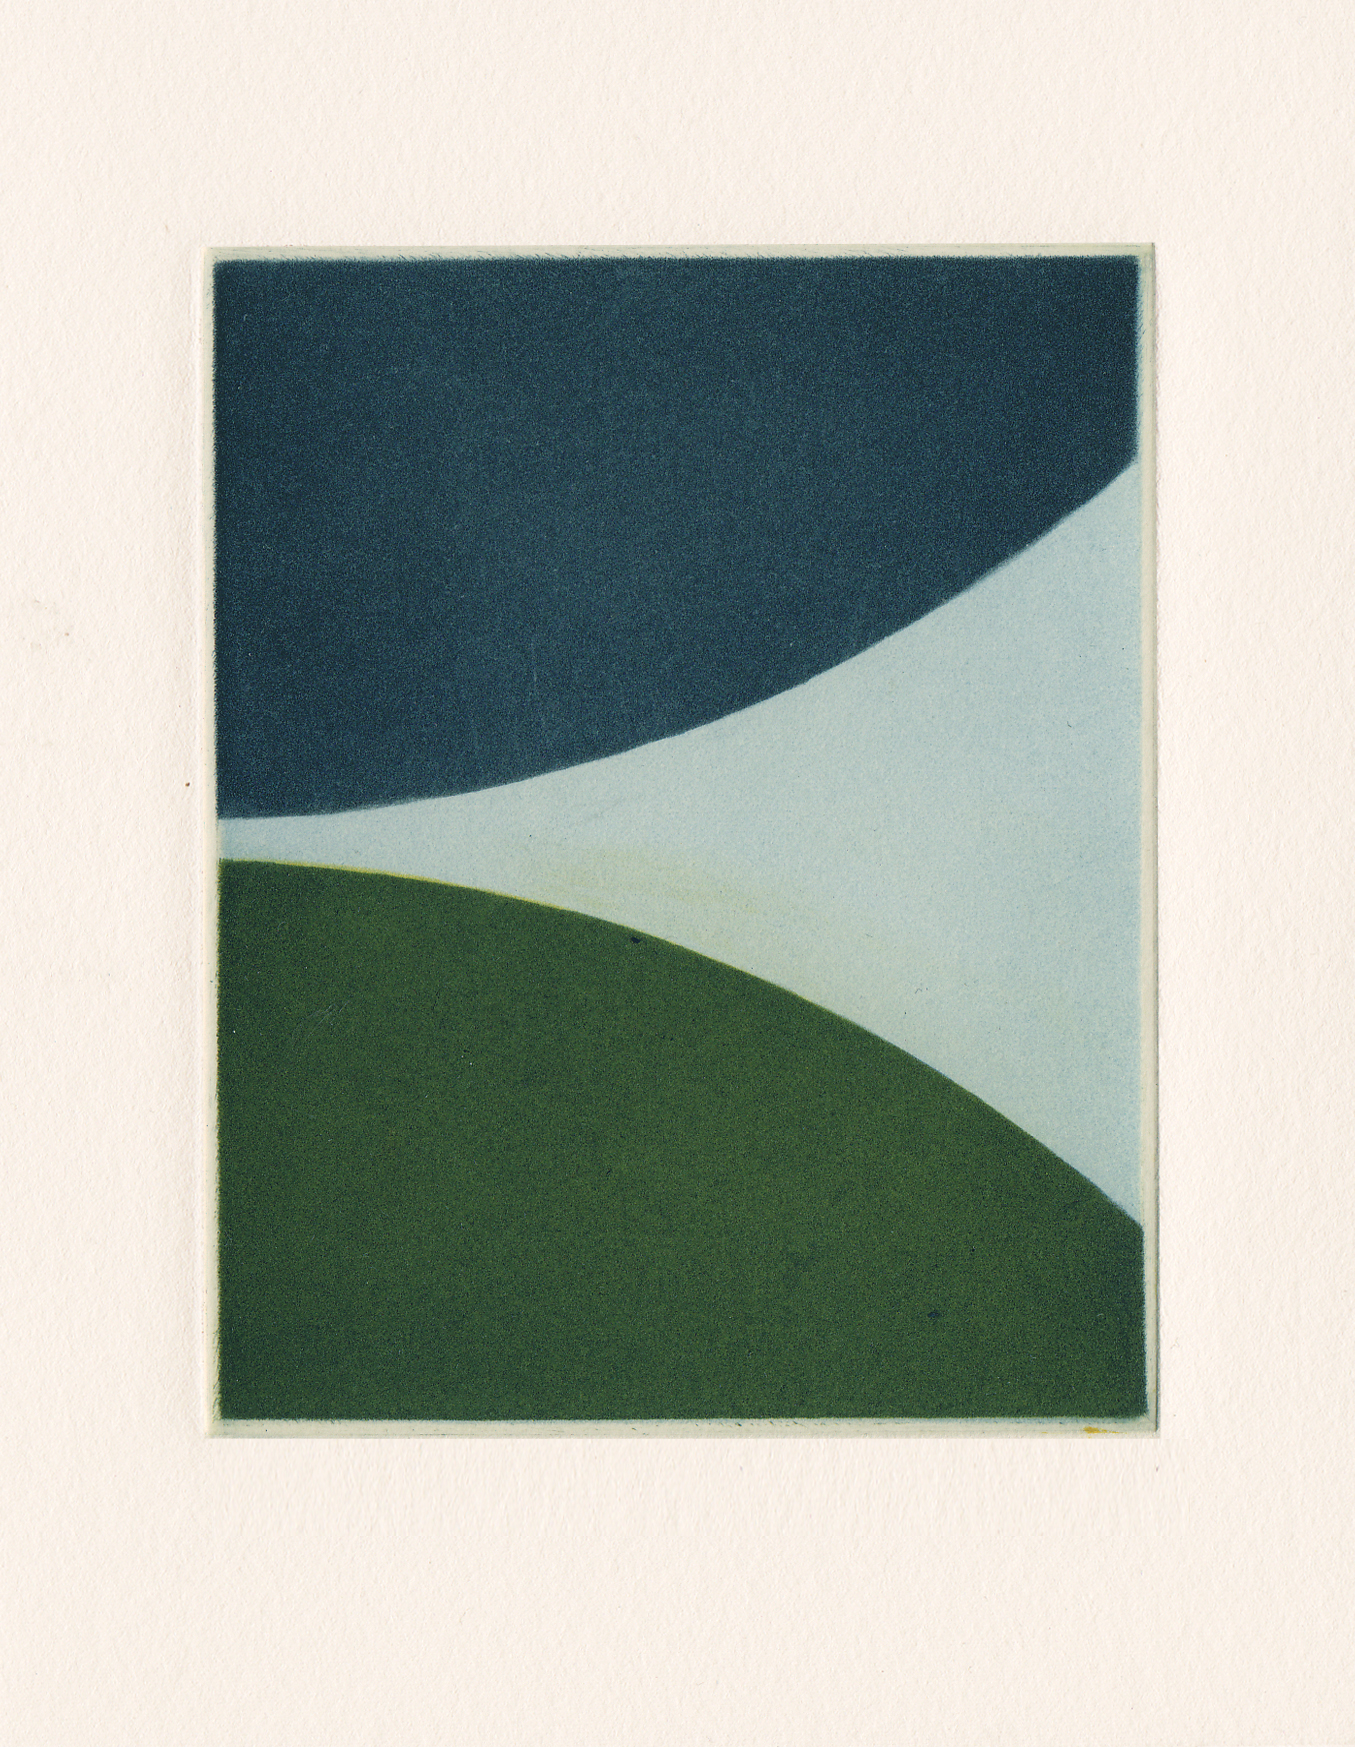  Majla Zeneli, The yellowed descent, 2015, Mezzotinto-Druck, 10 x 8 cm 